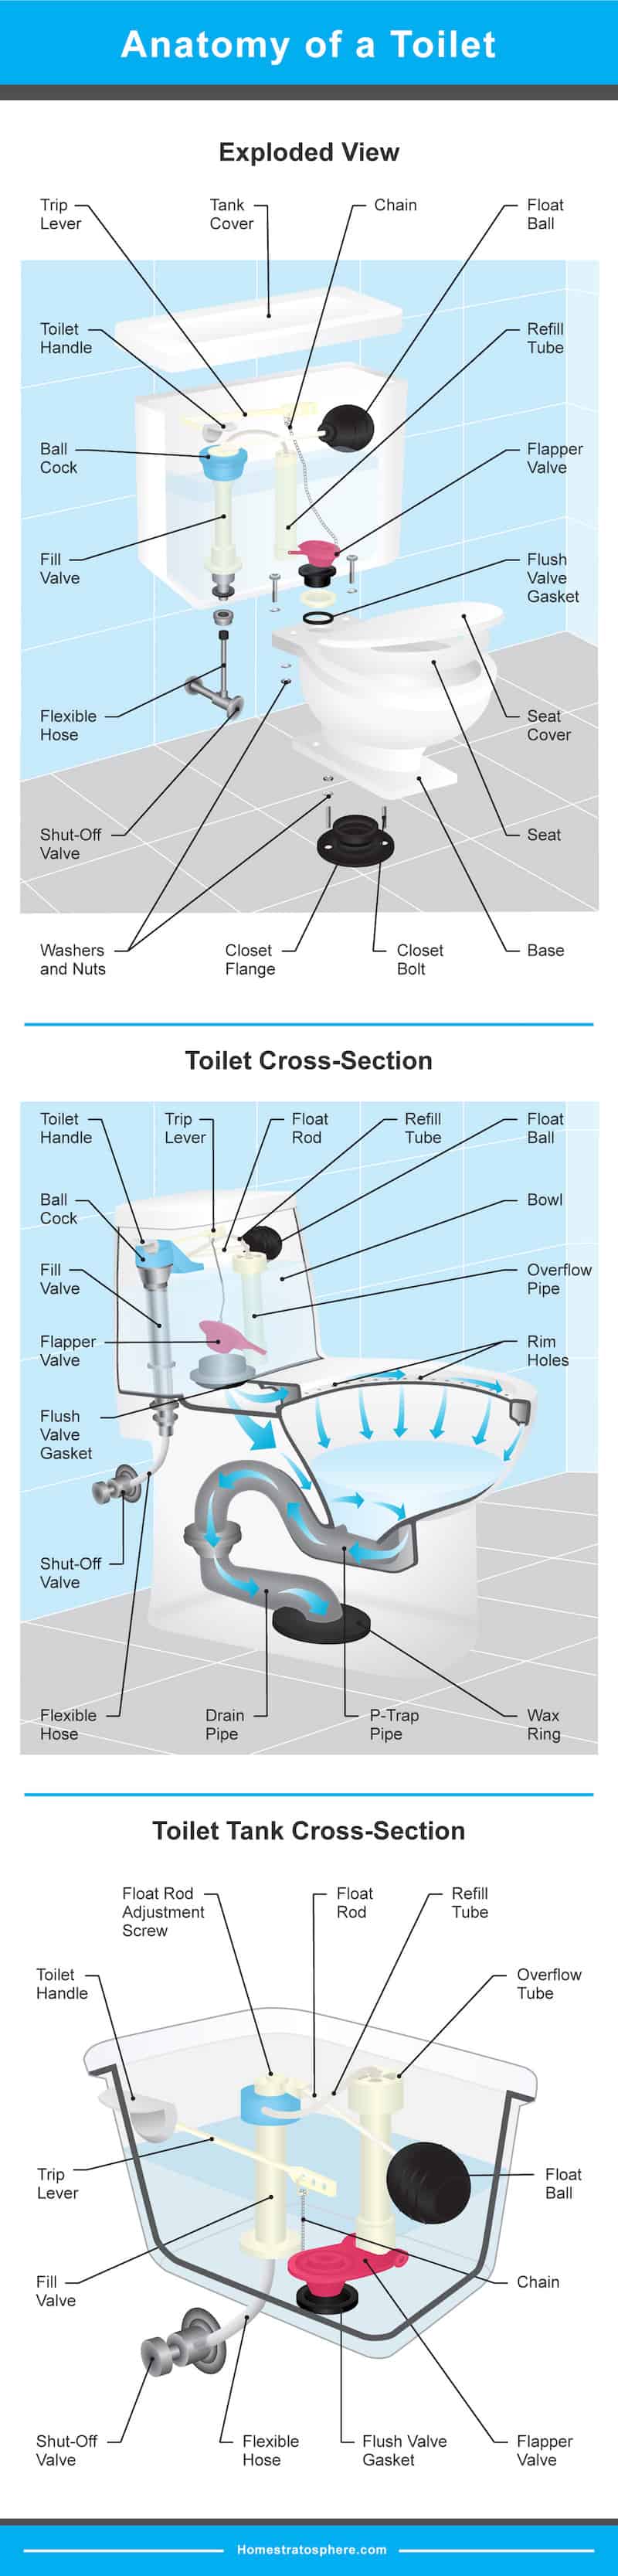 图设置了厕所的所有不同部分 - 坦克，碗和管道。